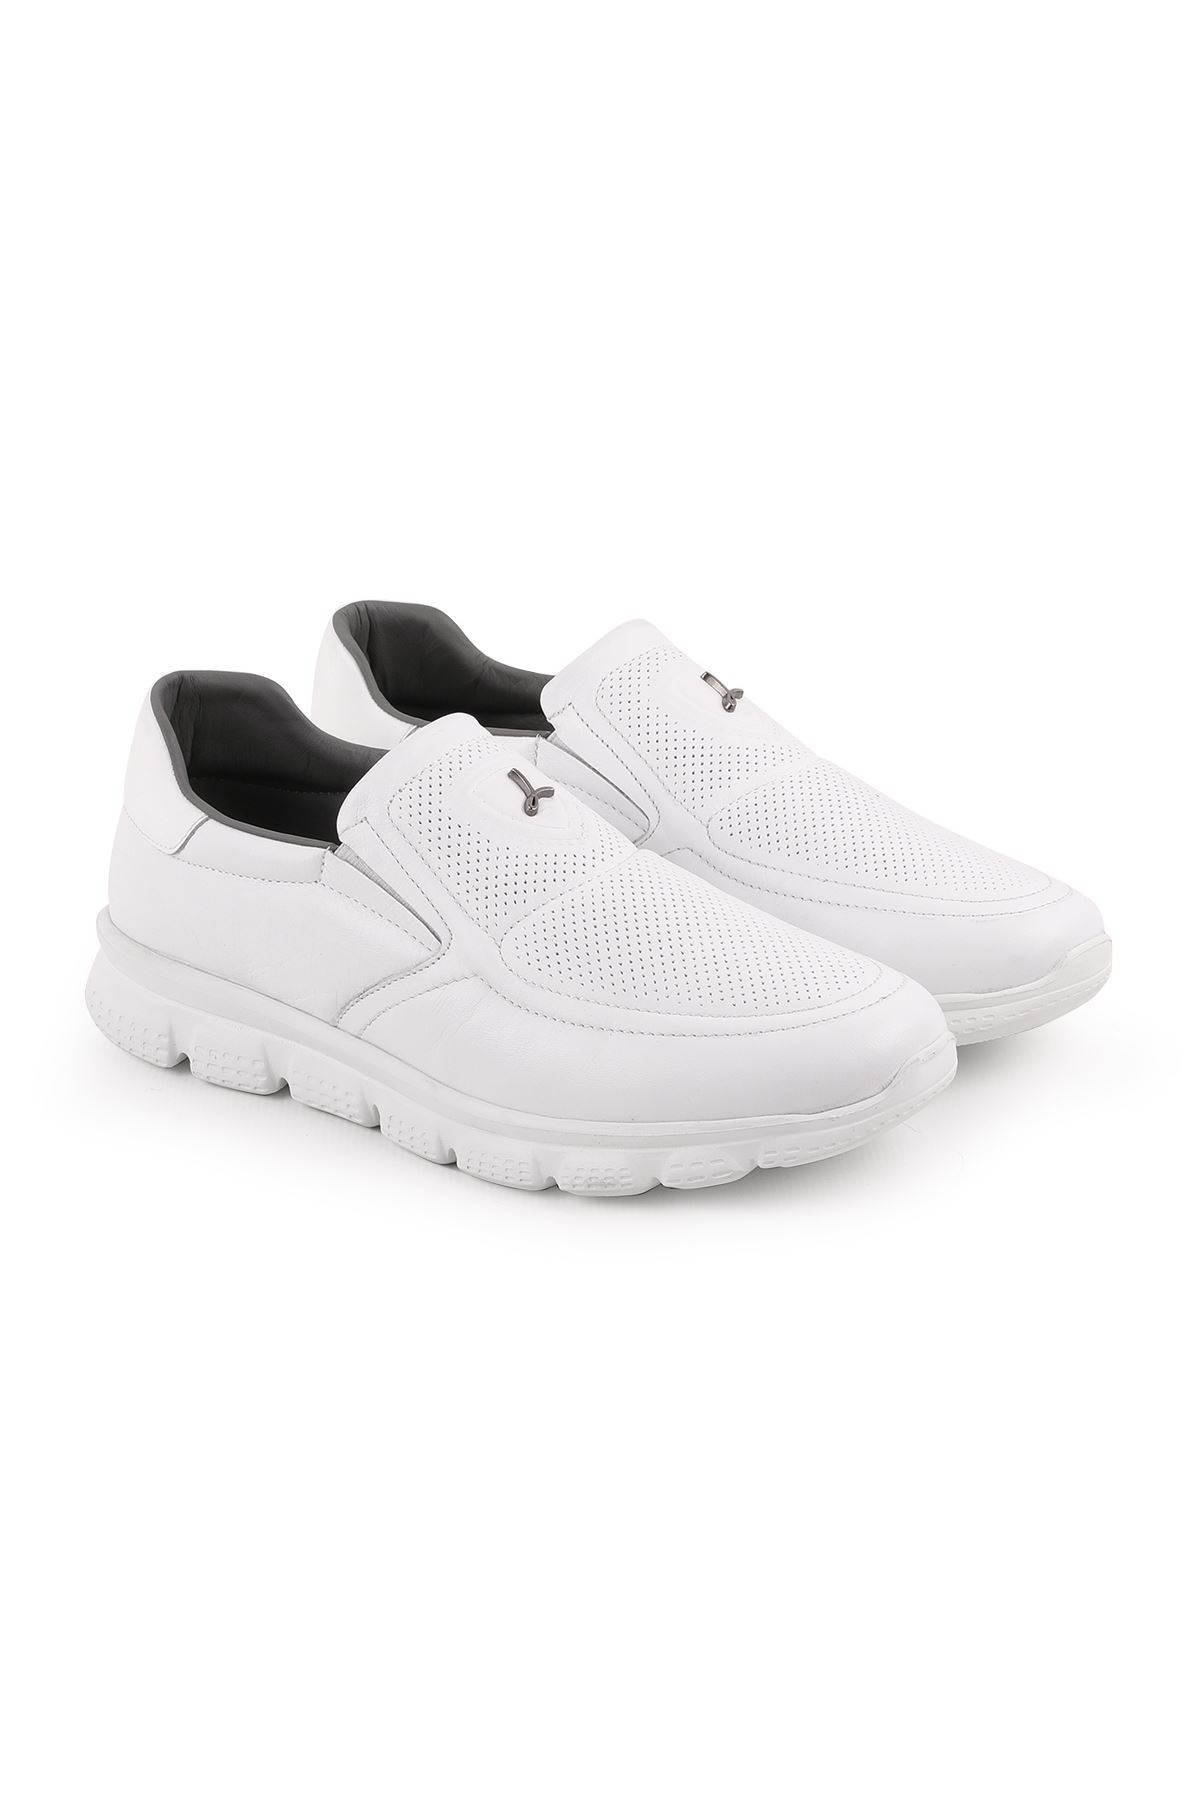 Libero L5079 Beyaz Casual Erkek Ayakkabı 